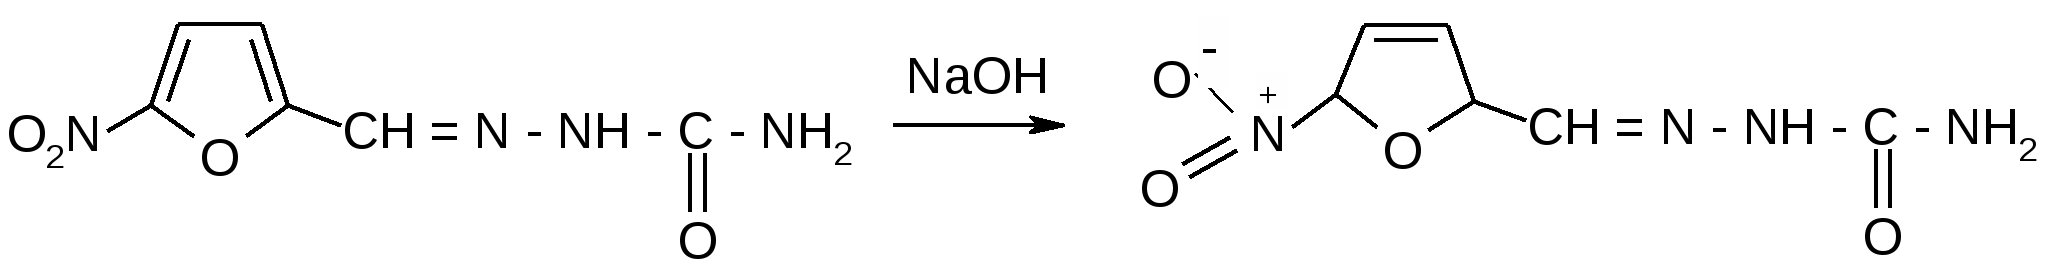 Naoh водный реакции